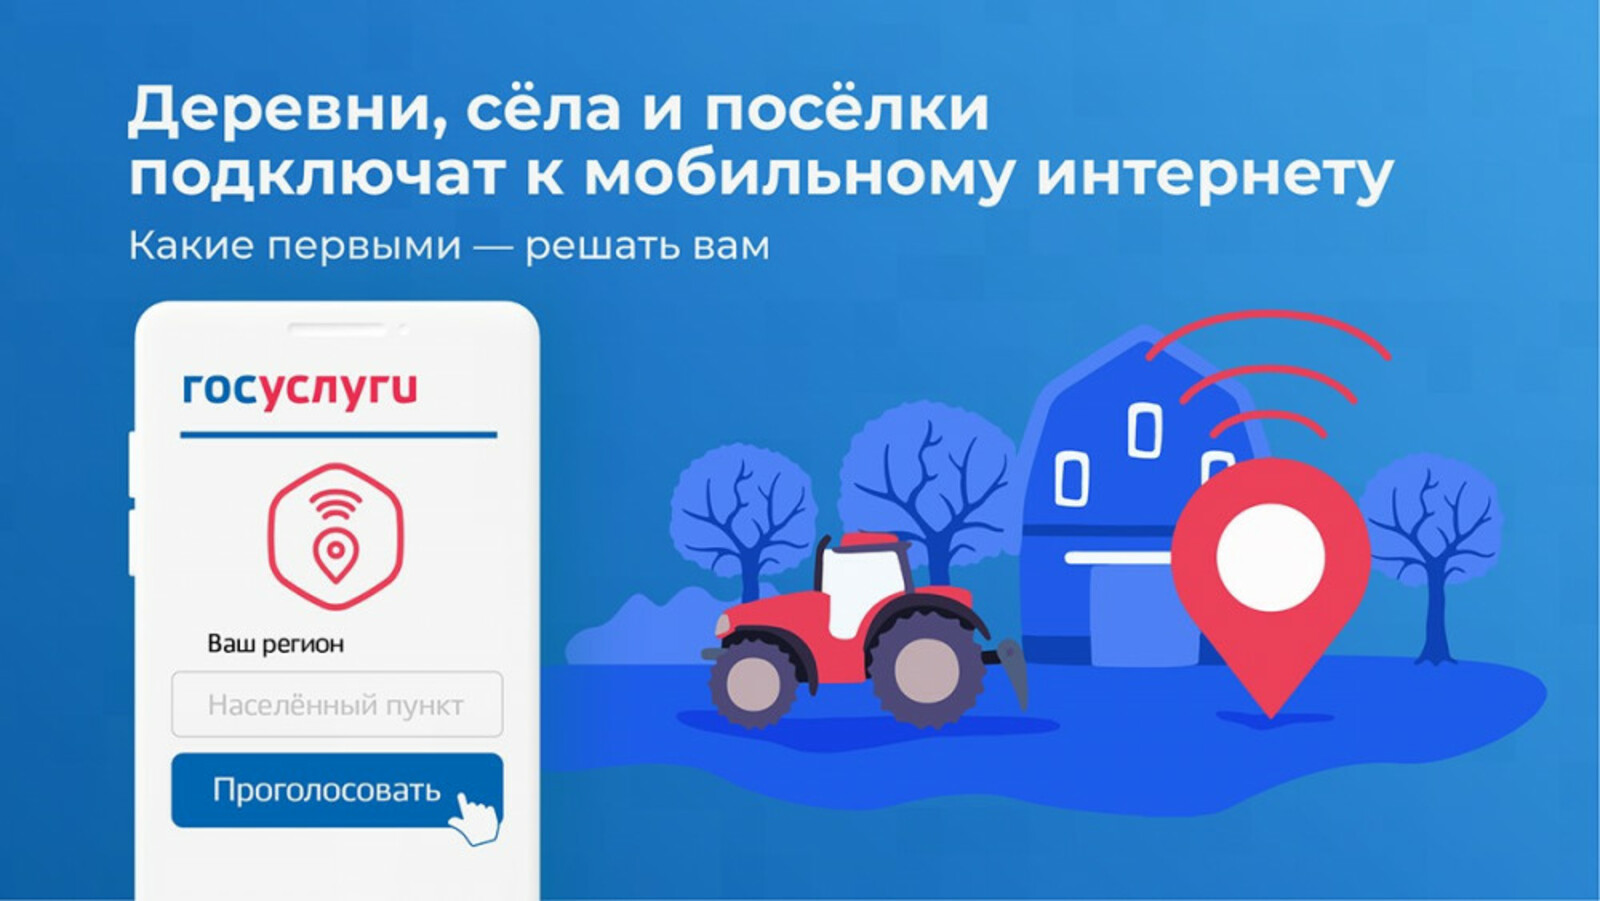 Жители Башкирии могут выбрать населенные пункты, куда проведут мобильную связь 4G